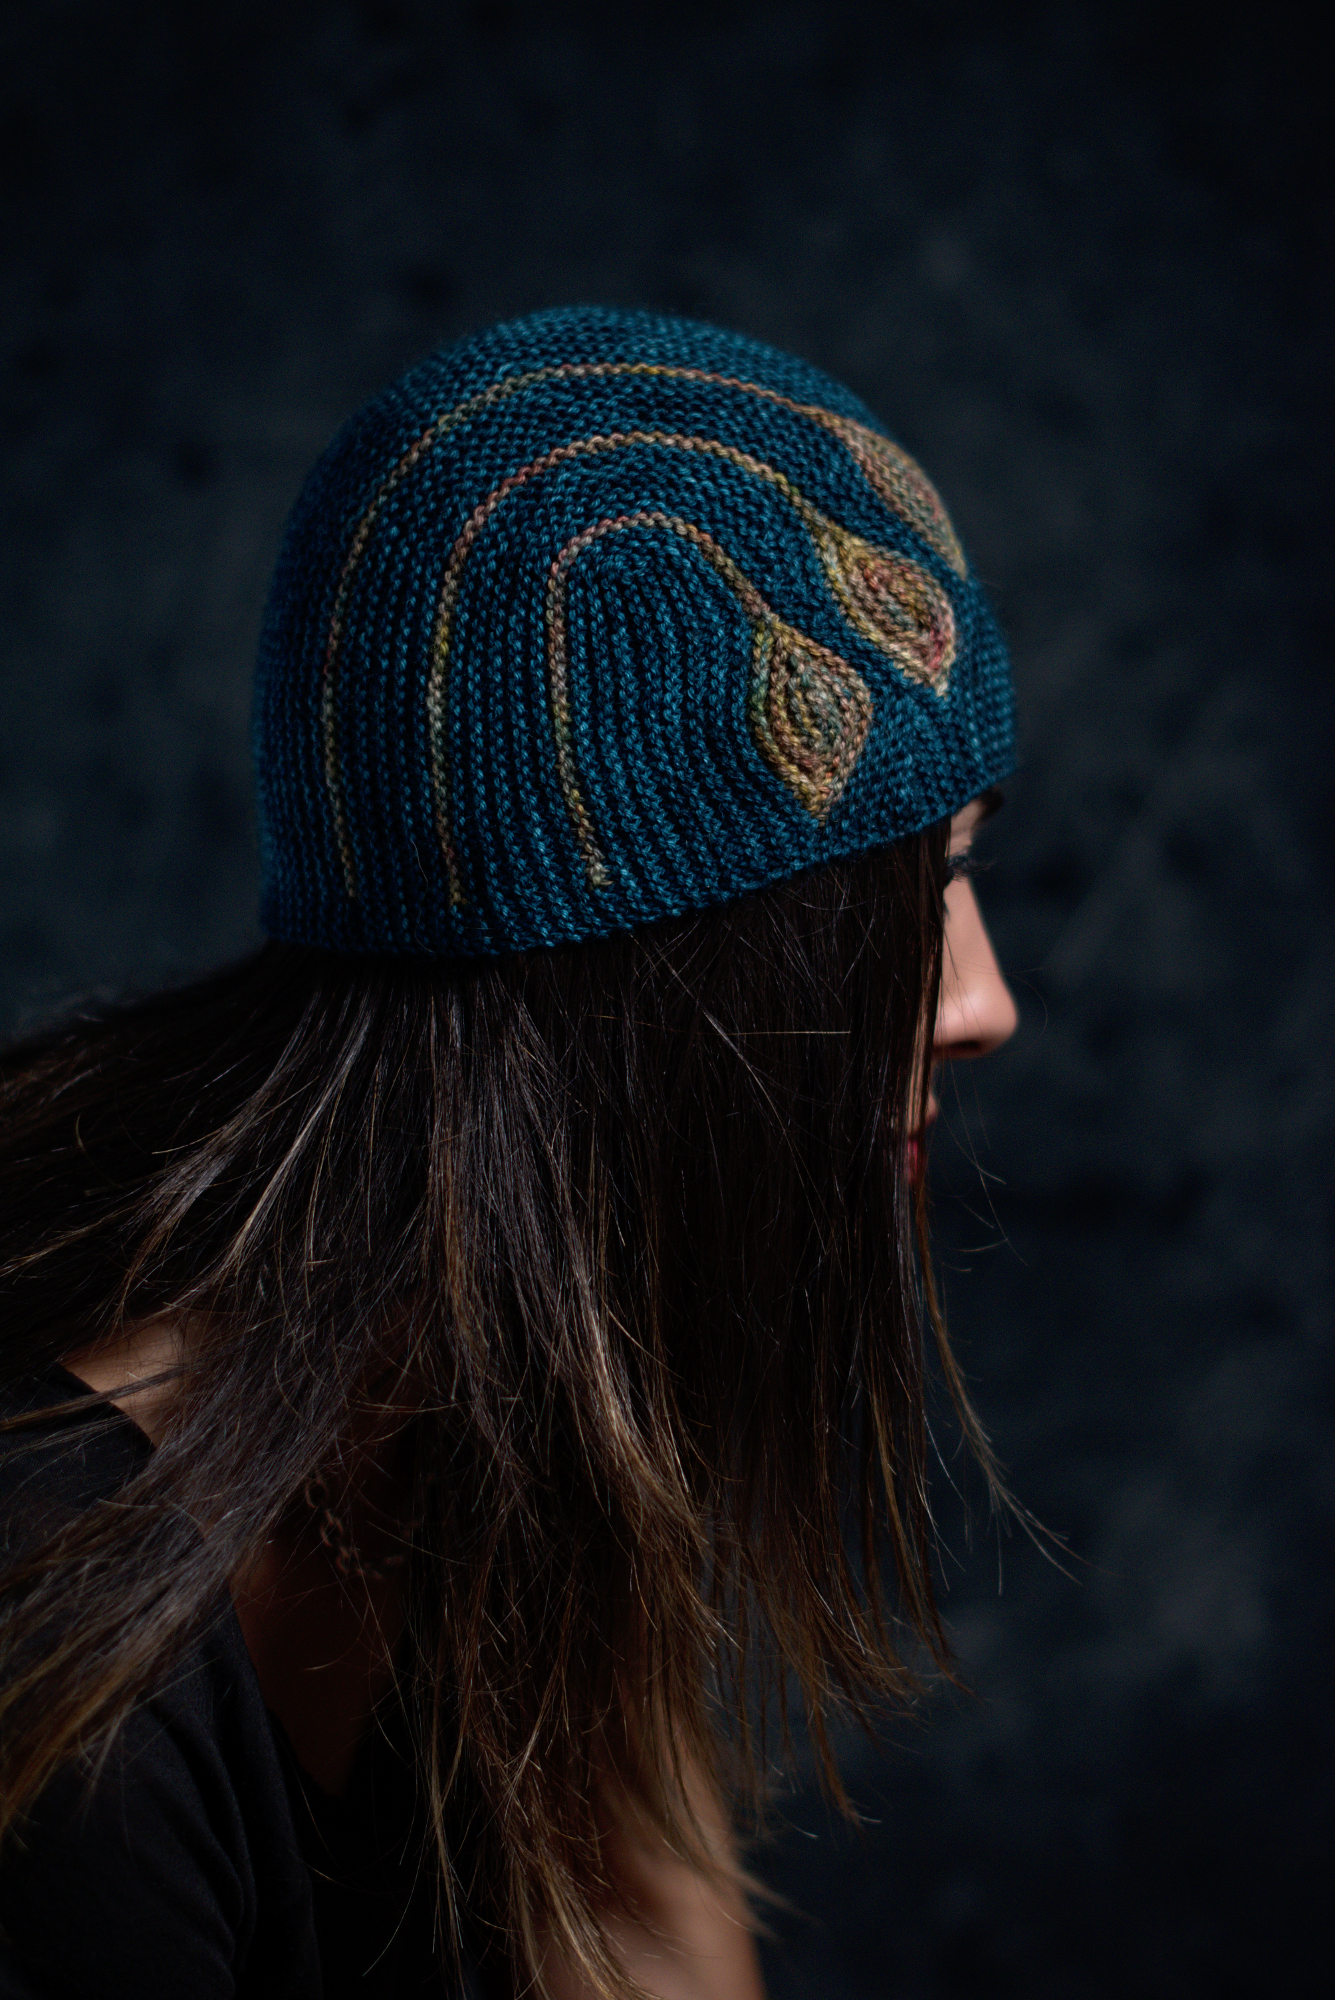 Chiral sideways knit short row colourwork hat knitting pattern